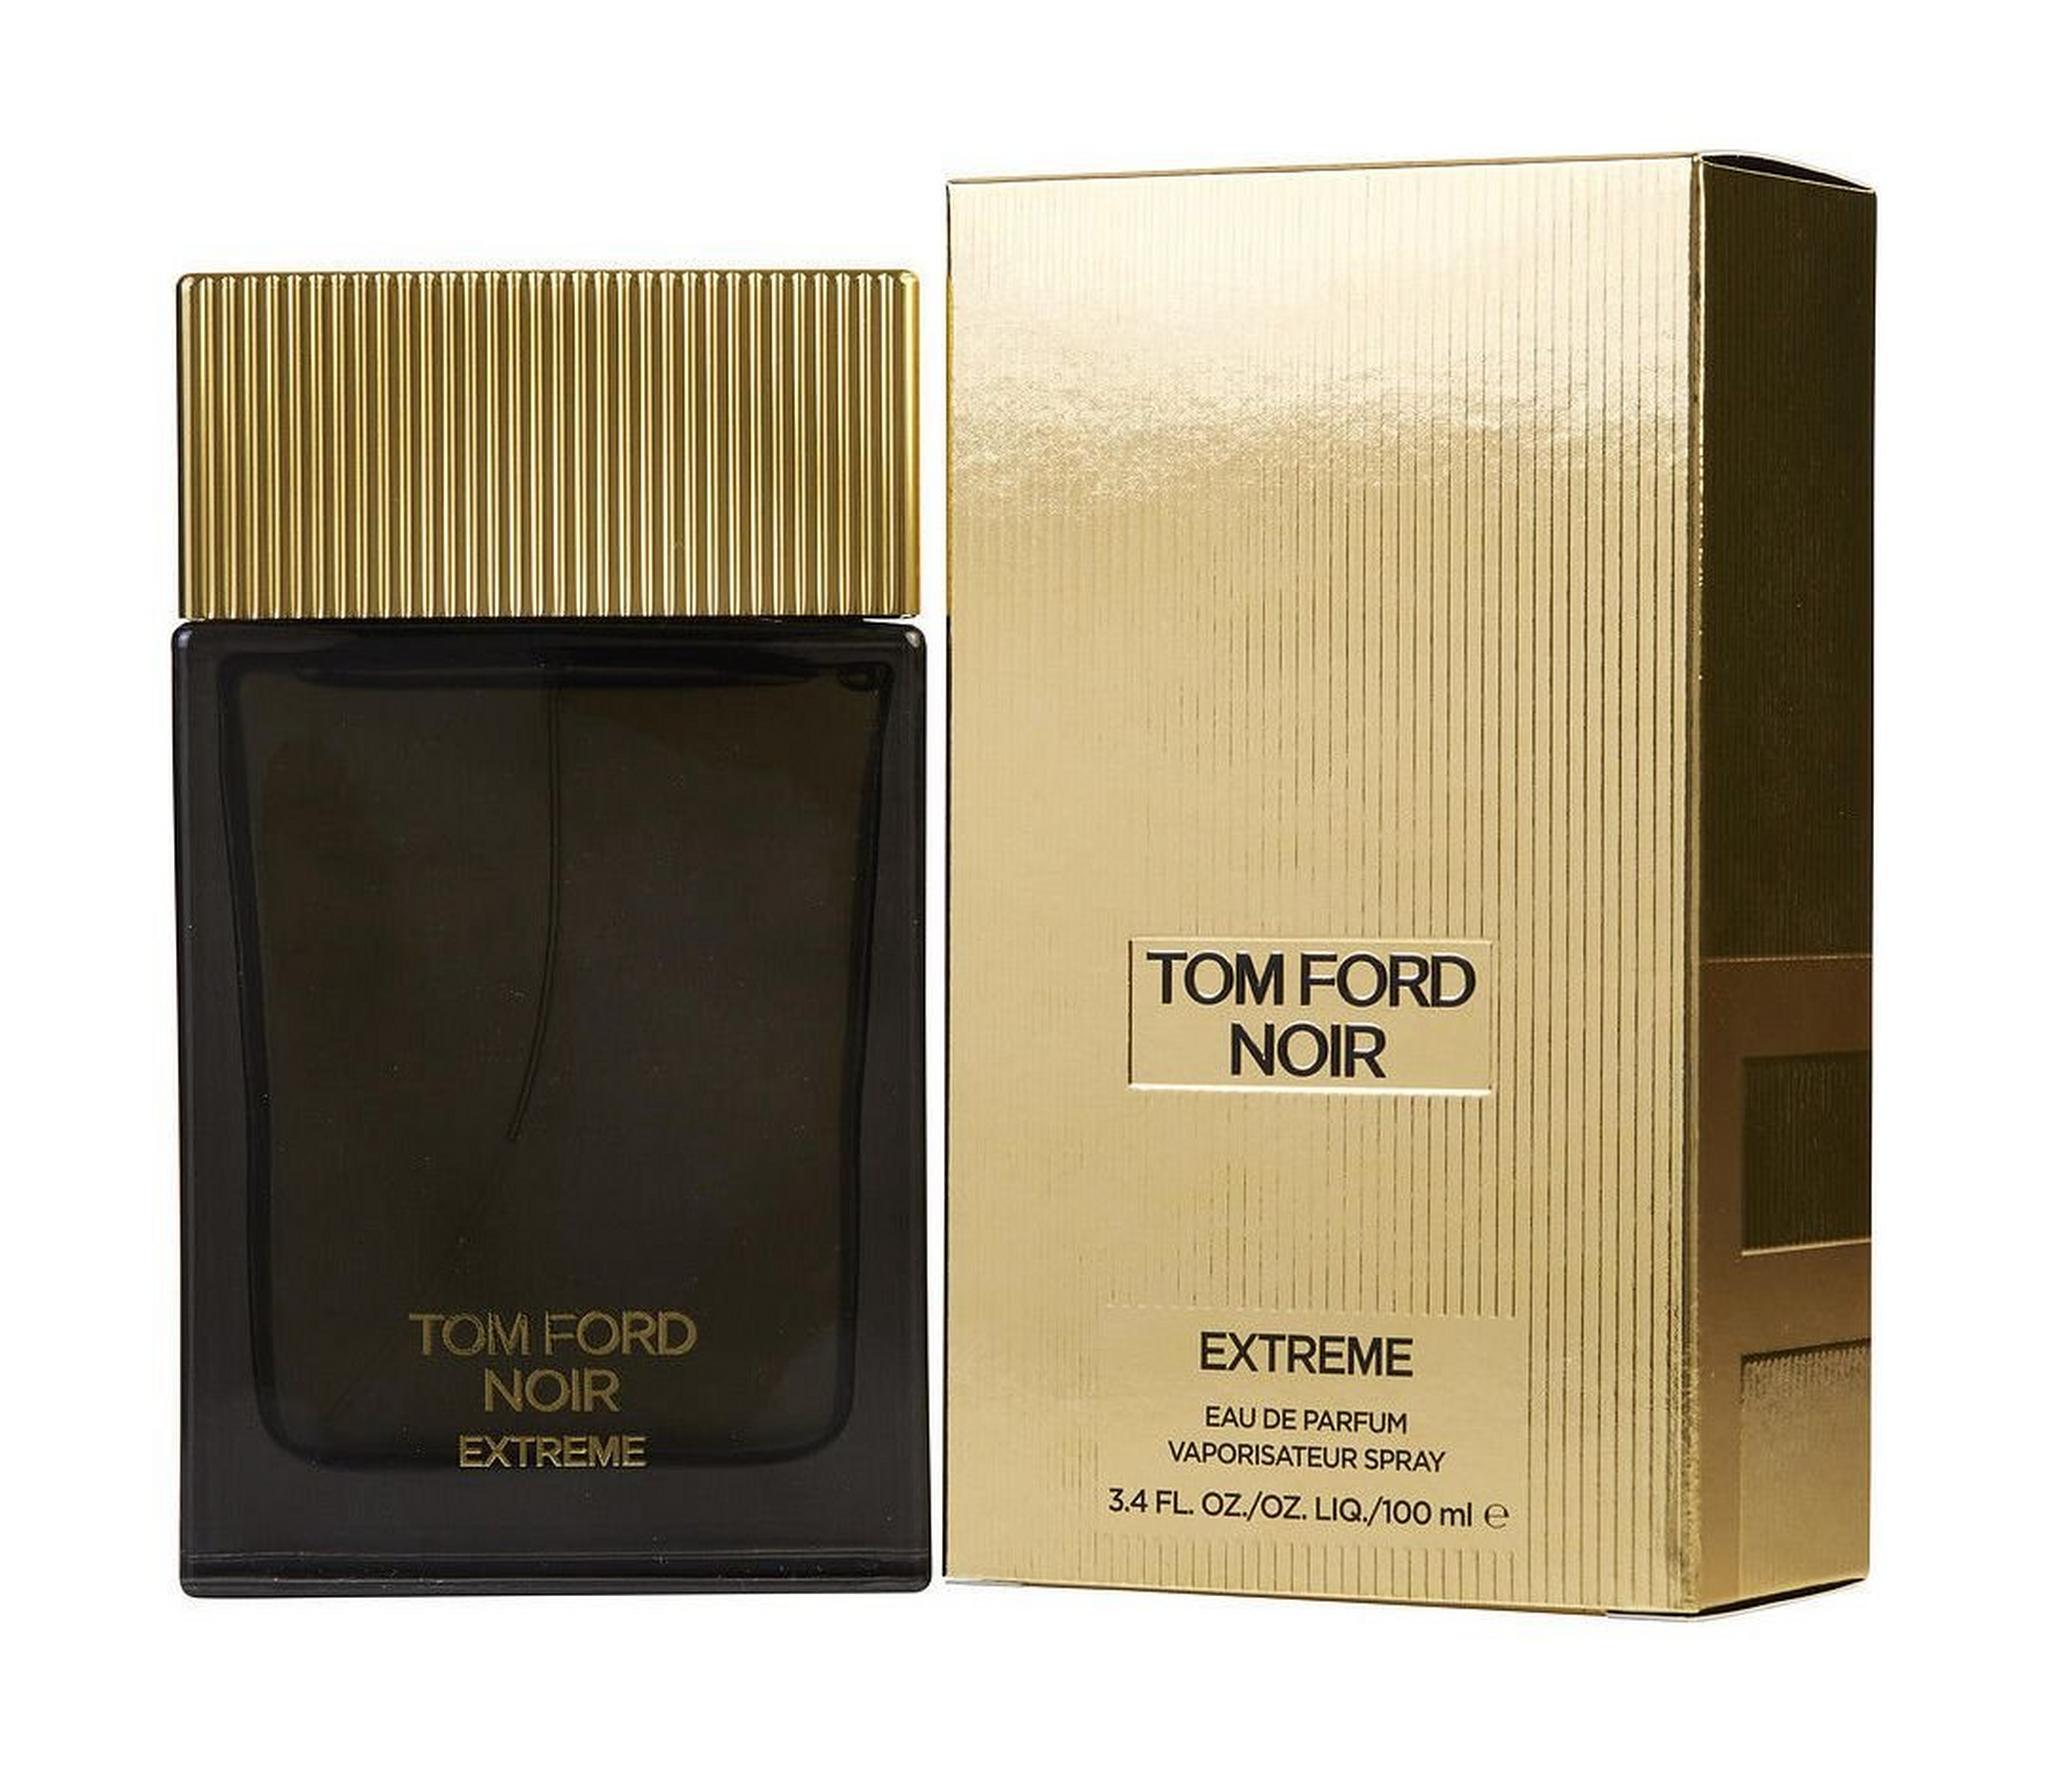 TOM FORD Noir Extreme - Eau de Parfum 100 ml